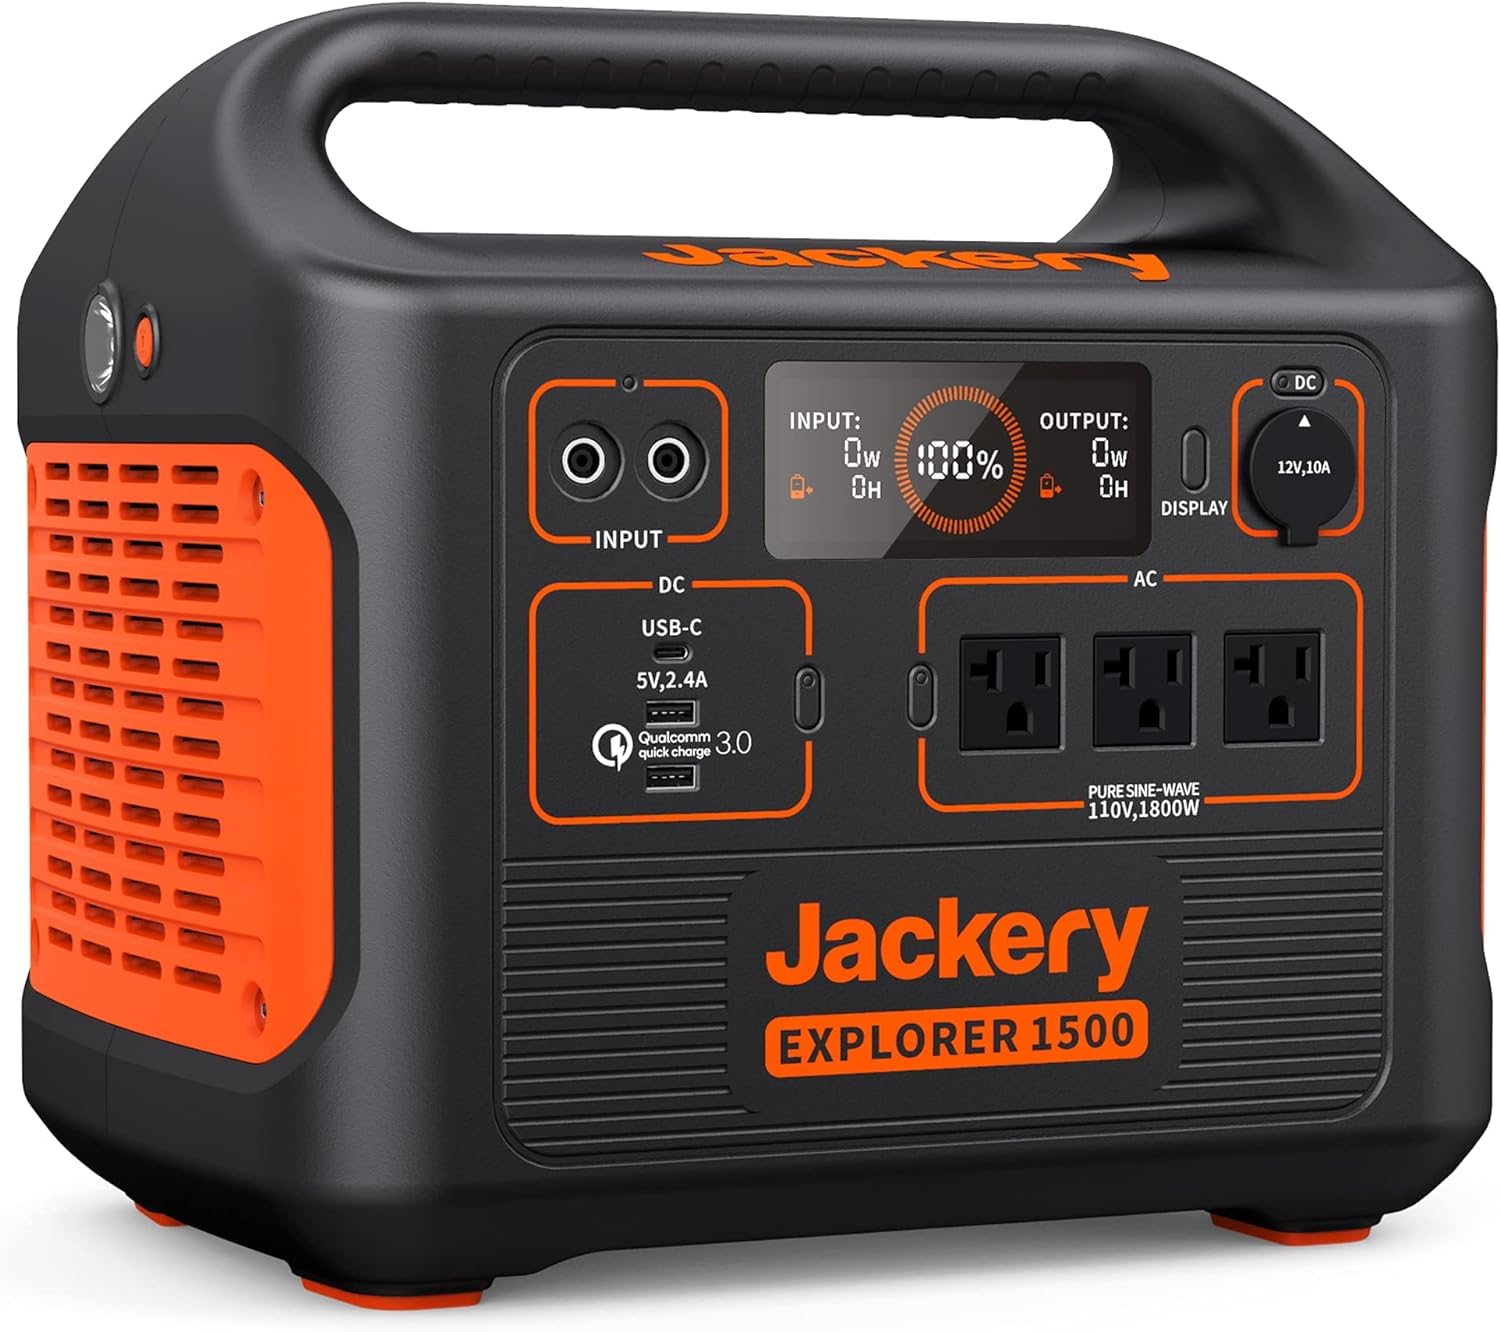 Jackery Explorer 1500